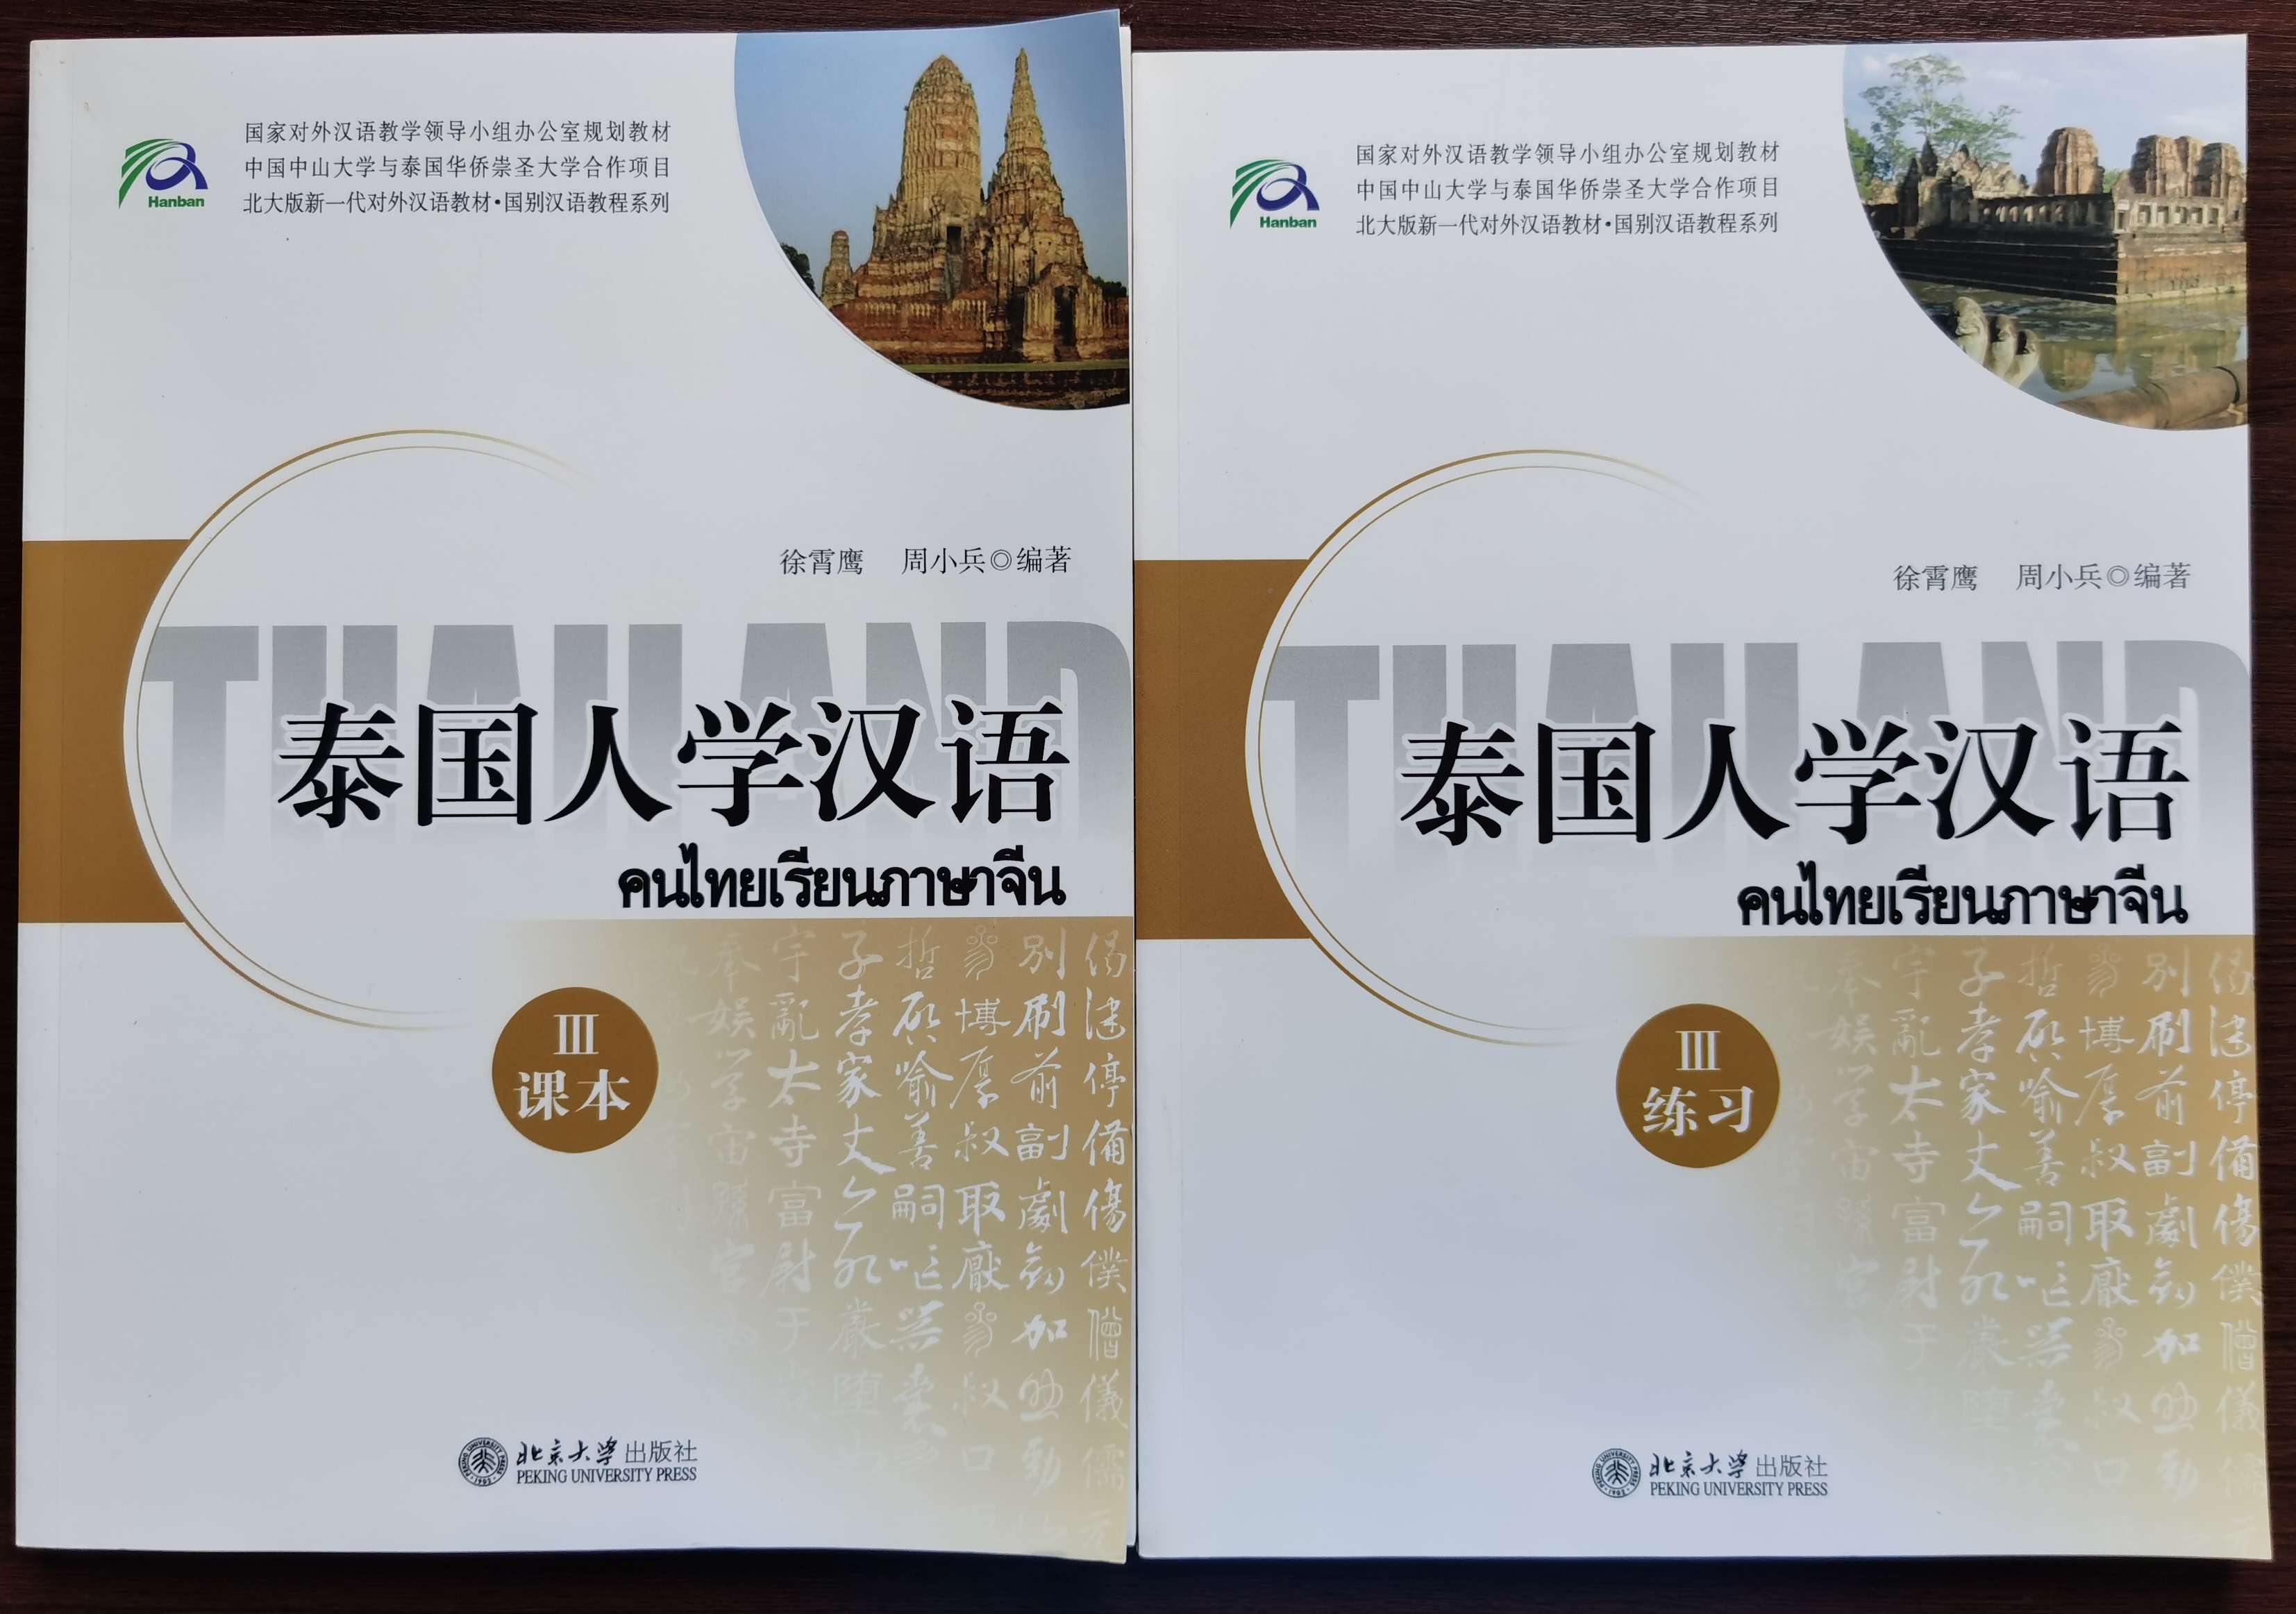 แบบเรียนภาษาจีน  泰国人学汉语3(课本+练习)(本册共2分册CD) (Textbook + Workbook) แบบเรียน+แบบฝึกหัด[2 เล่ม / ชุด+CD)]